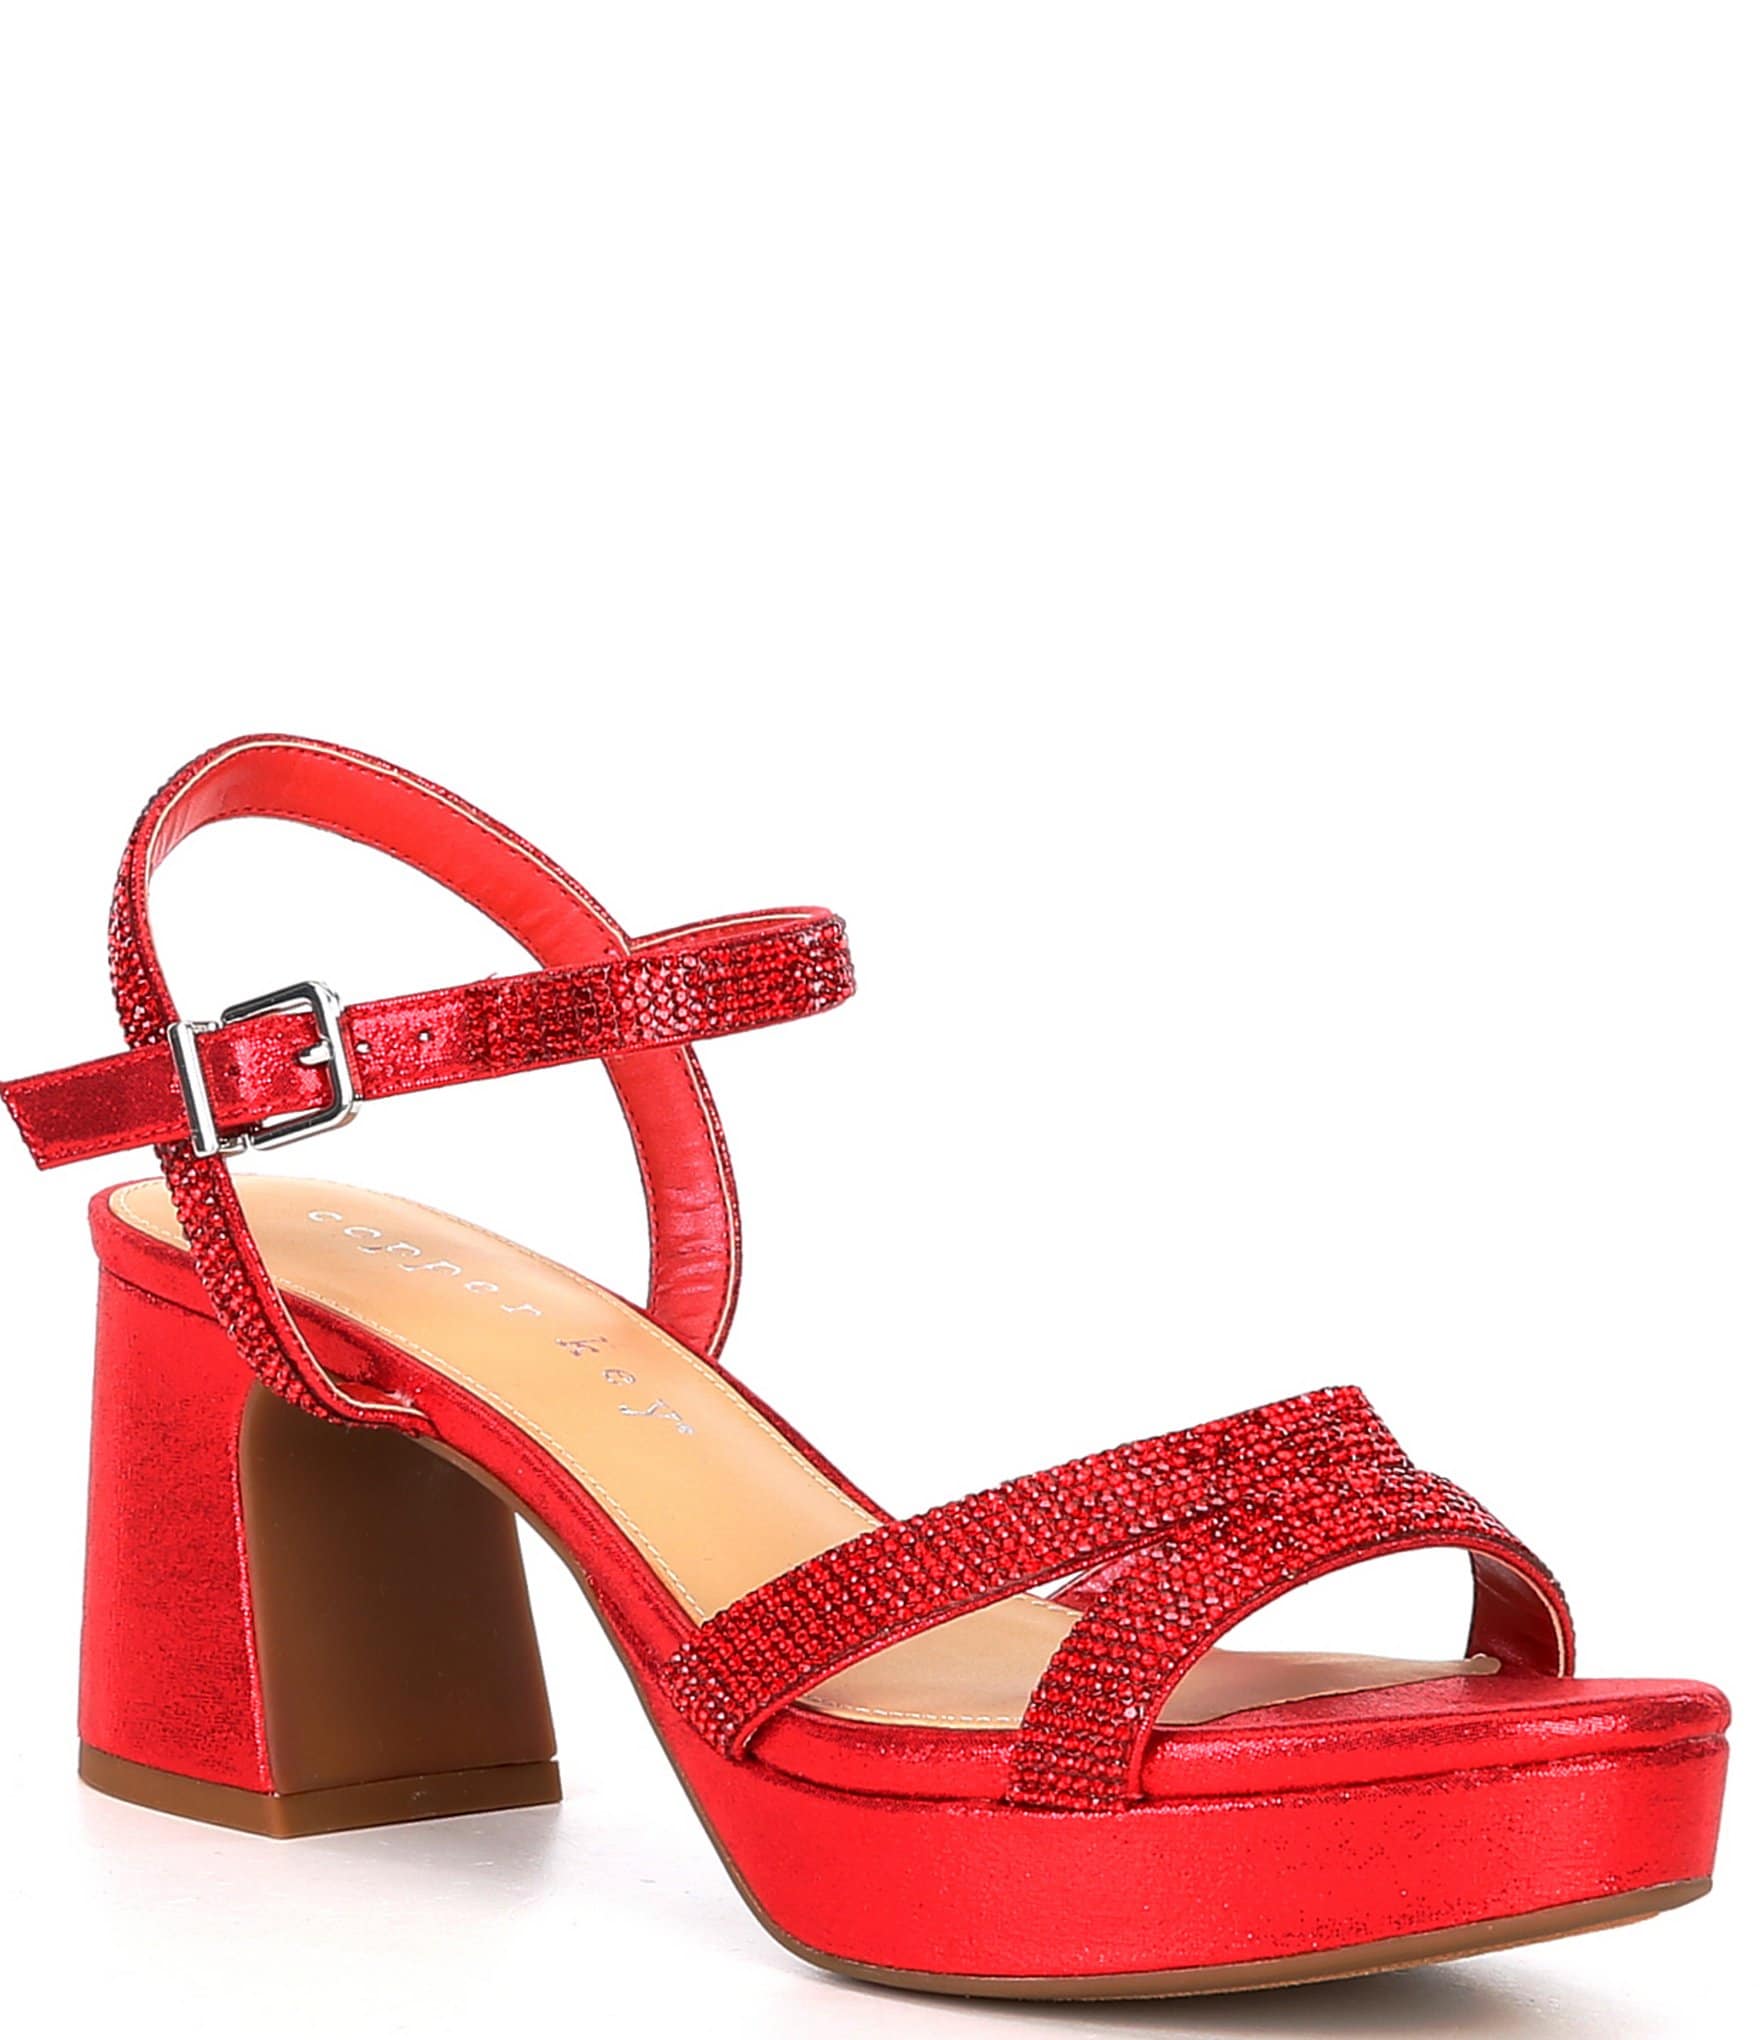 Red Women's Dress Sandals | Dillard's